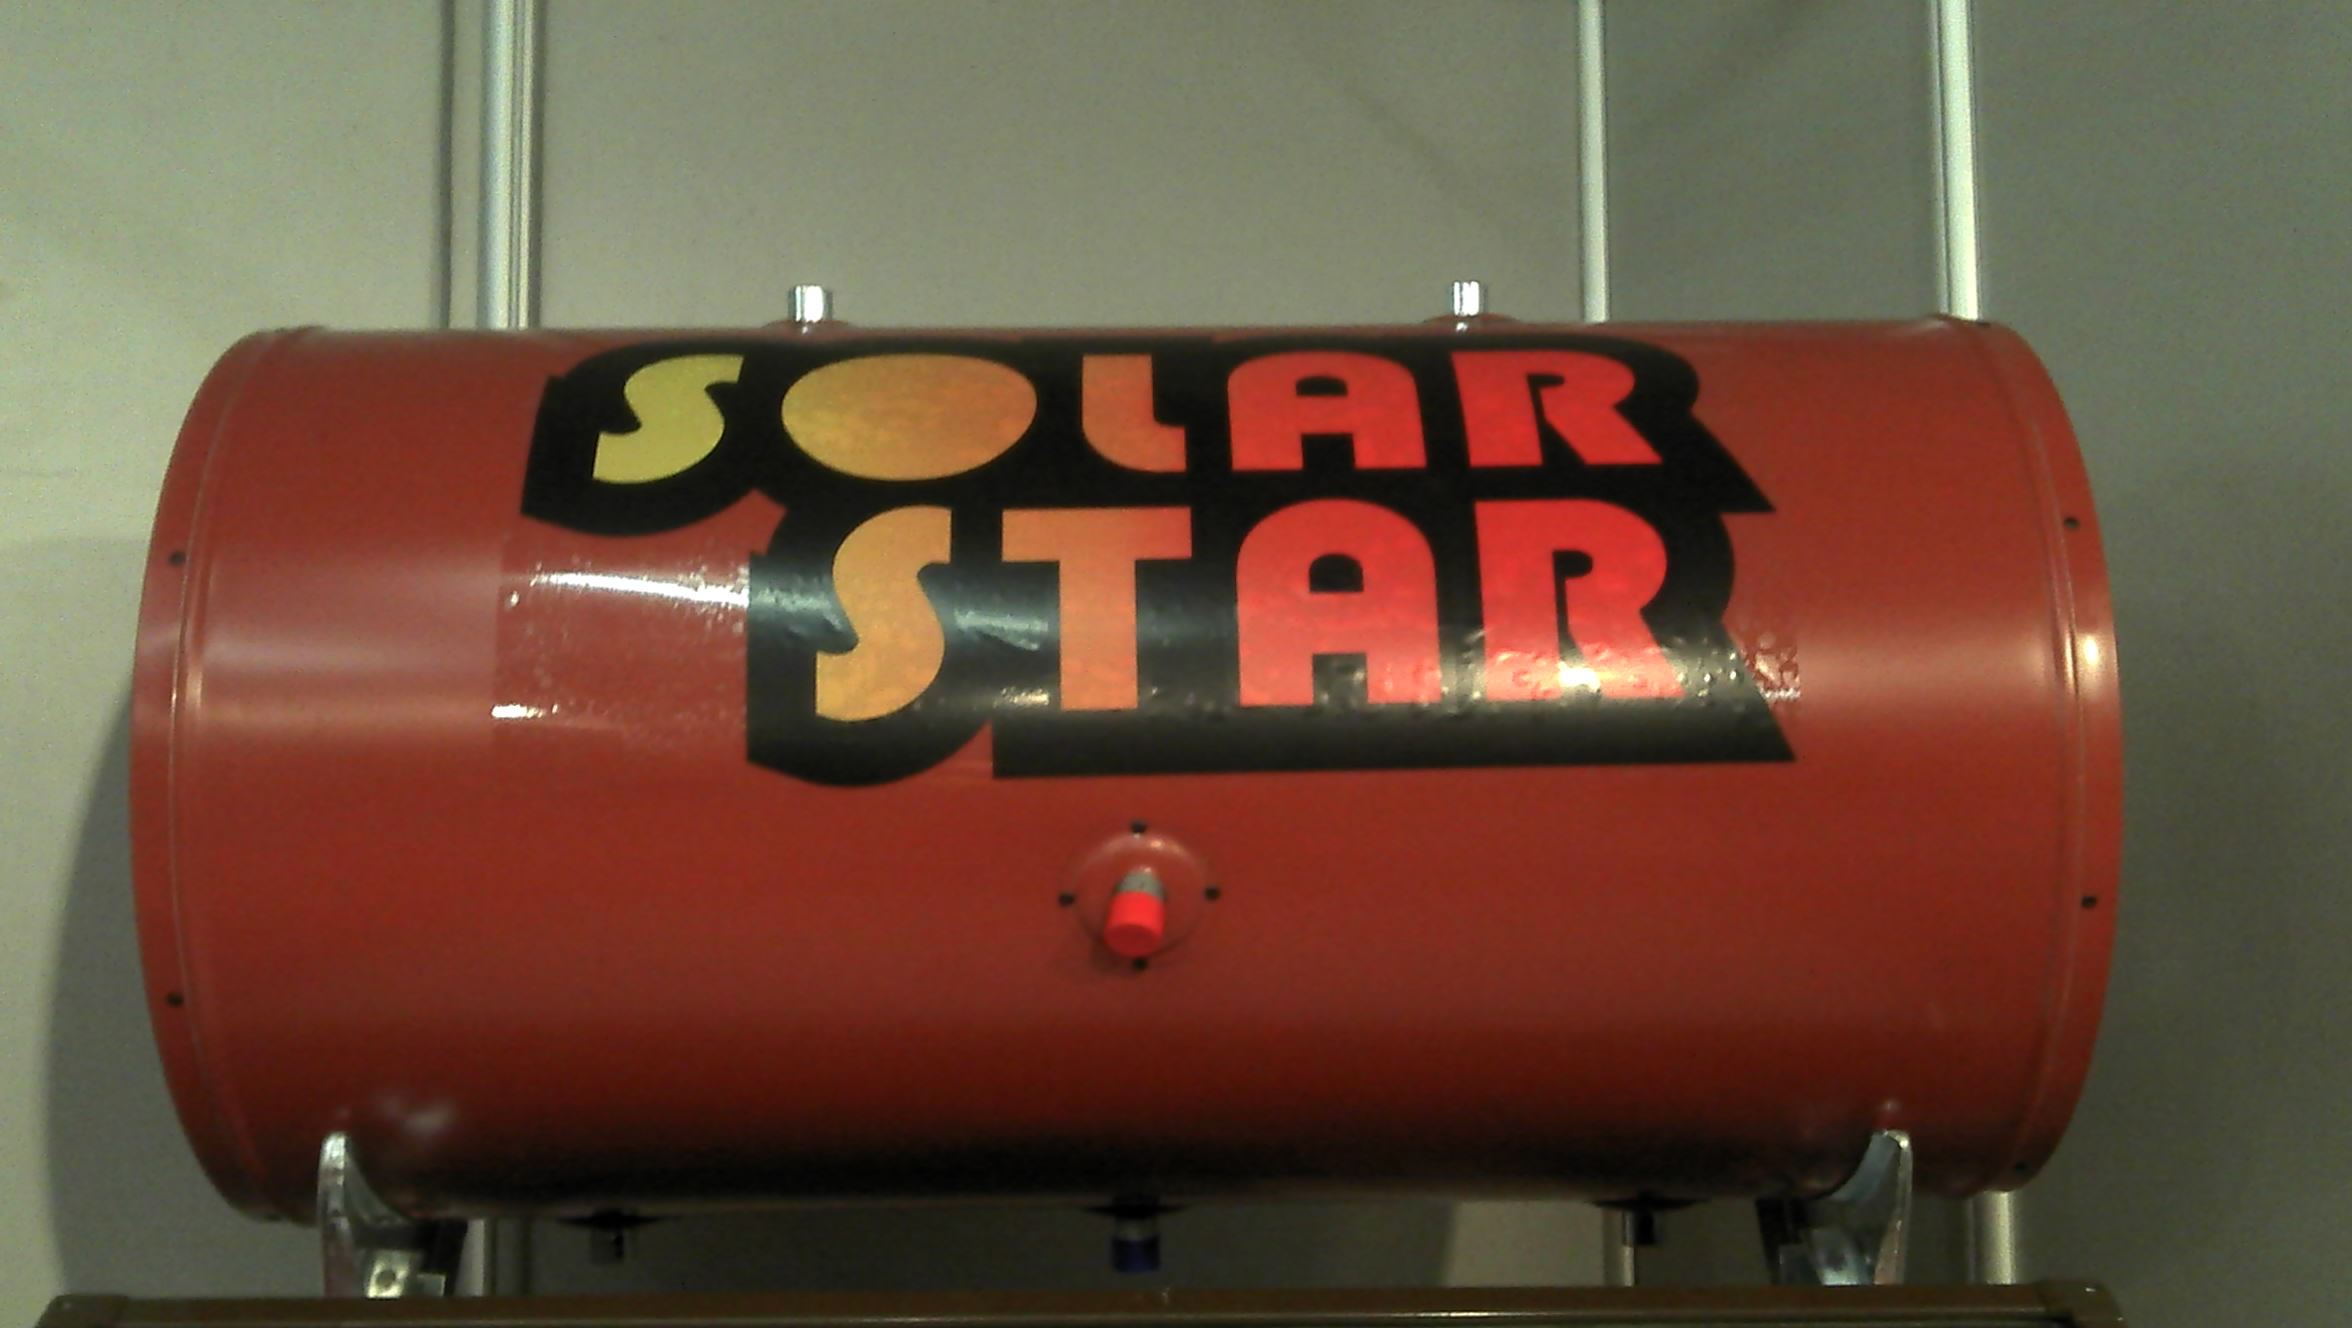 μποιλερ ηλιακού θερμοσίφωνα  160litr glass κεραμοσκεπησ-Διπλής Ενεργείας - solar star